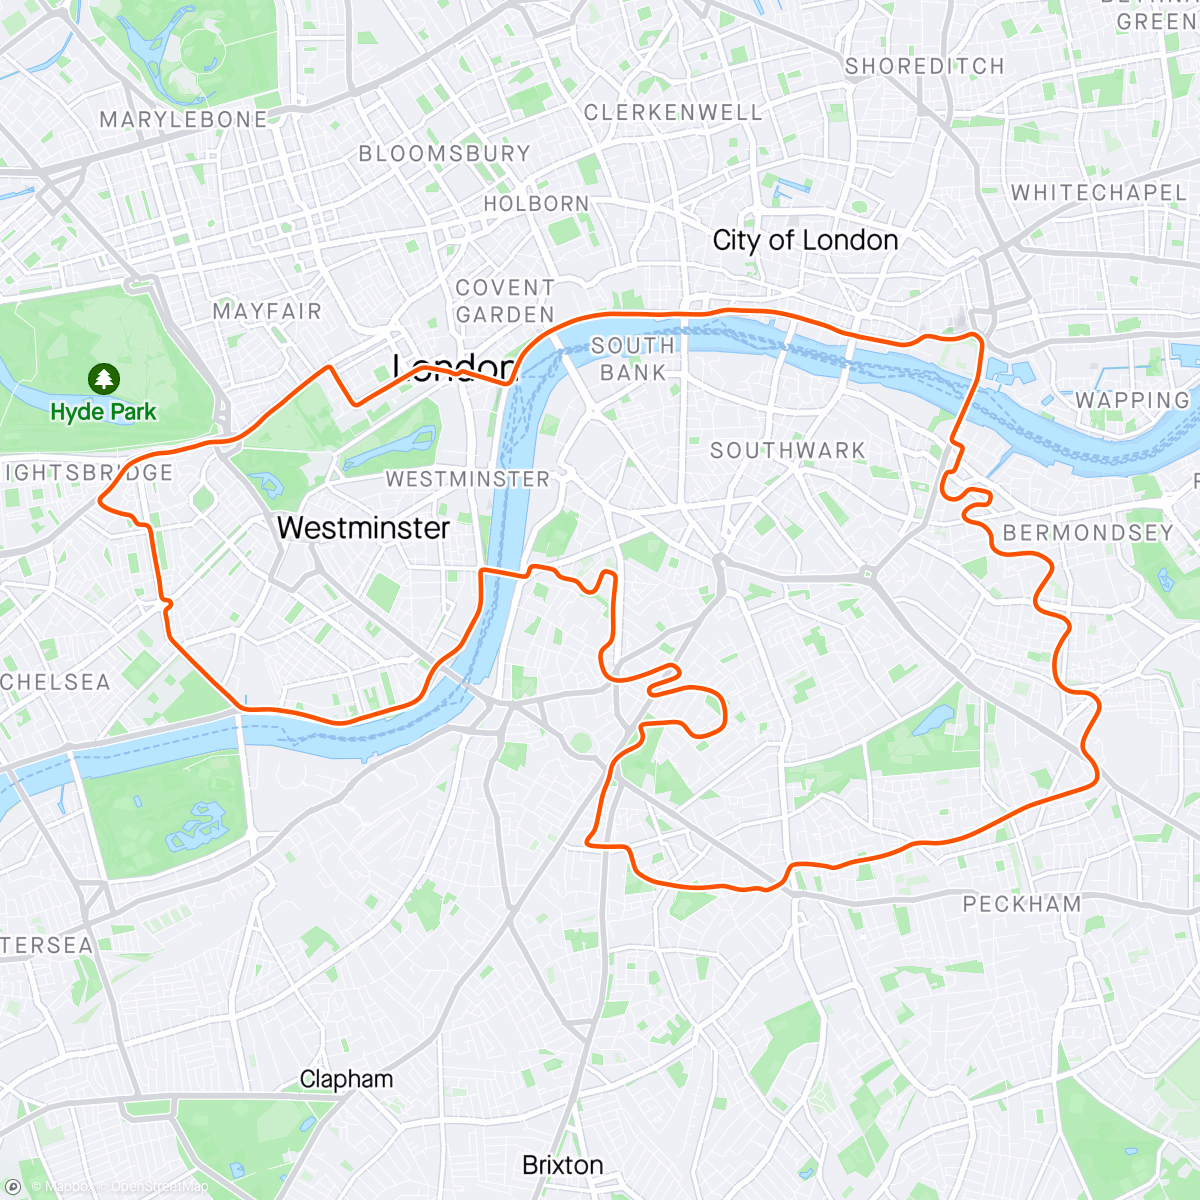 「Zwift - Greatest London Loop in London」活動的地圖